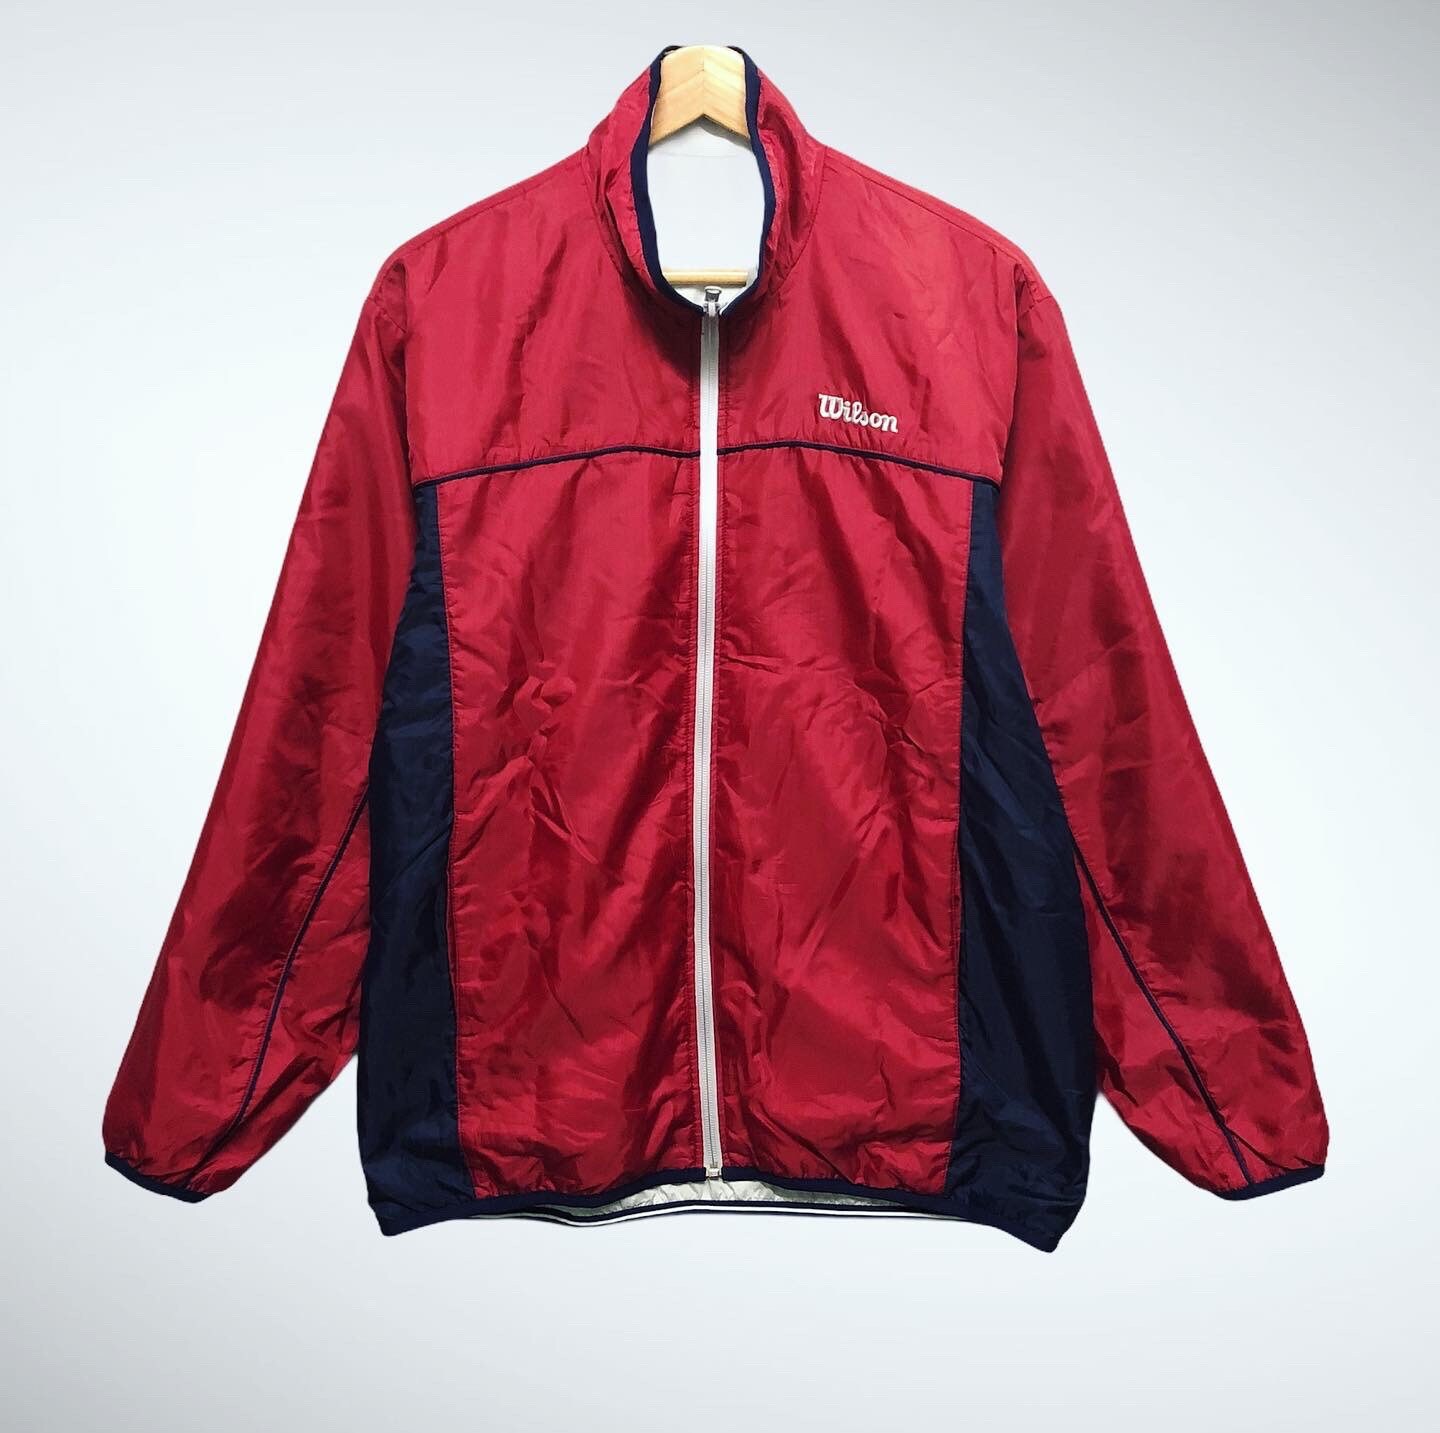 Vintage Wilson Reversible Jacket 90s Wilson Windbreaker - Etsy UK